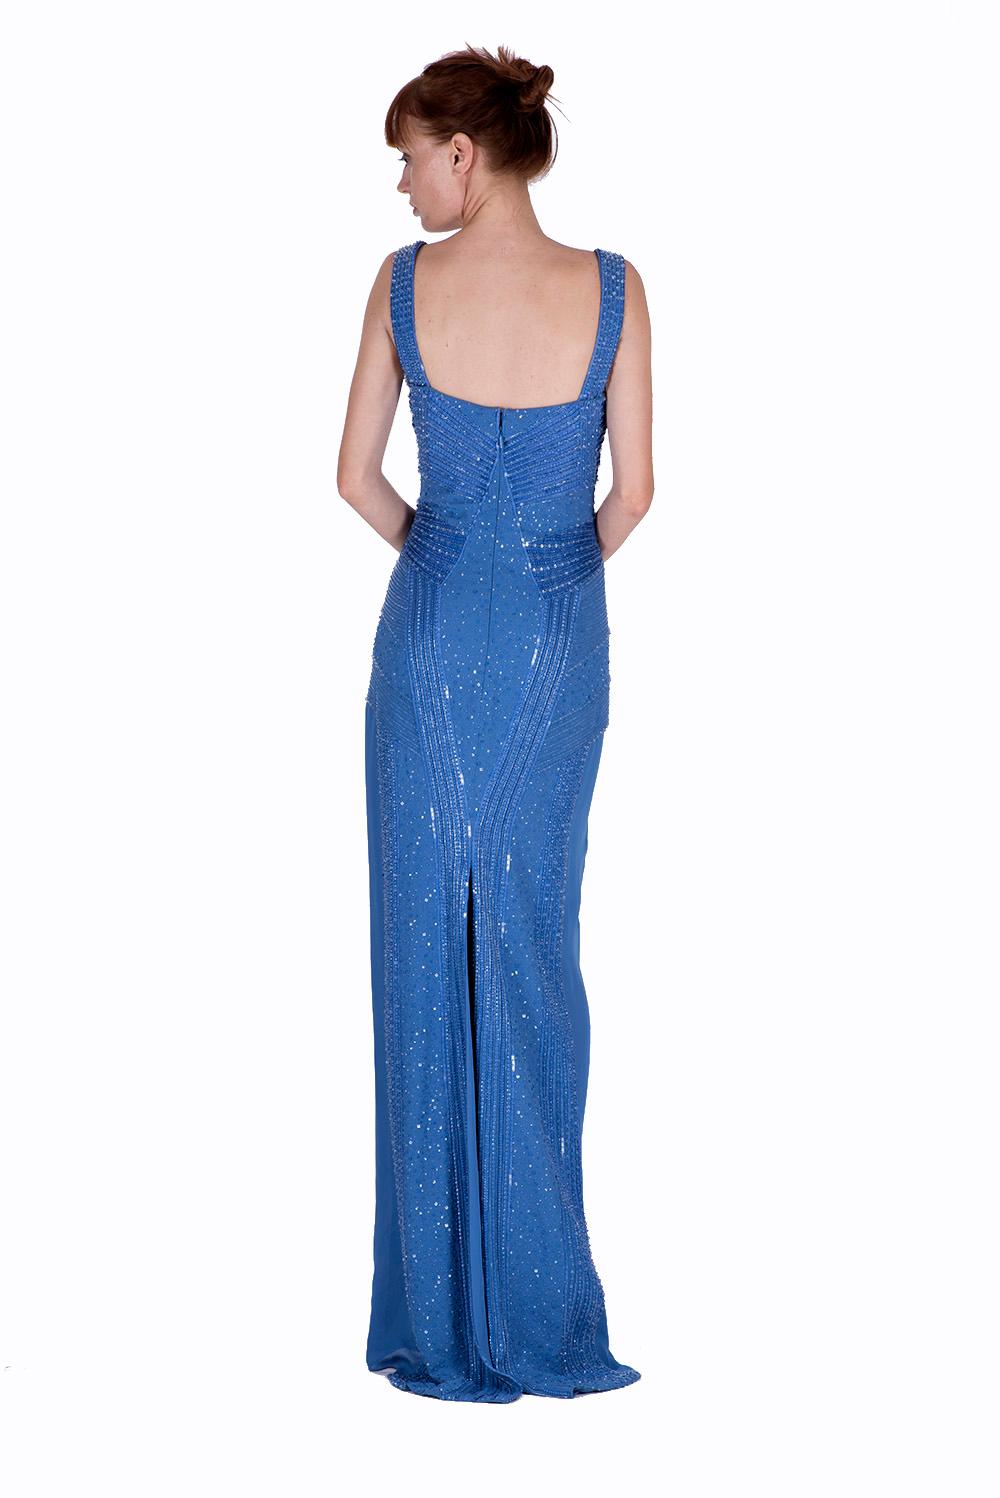 versace blue dress